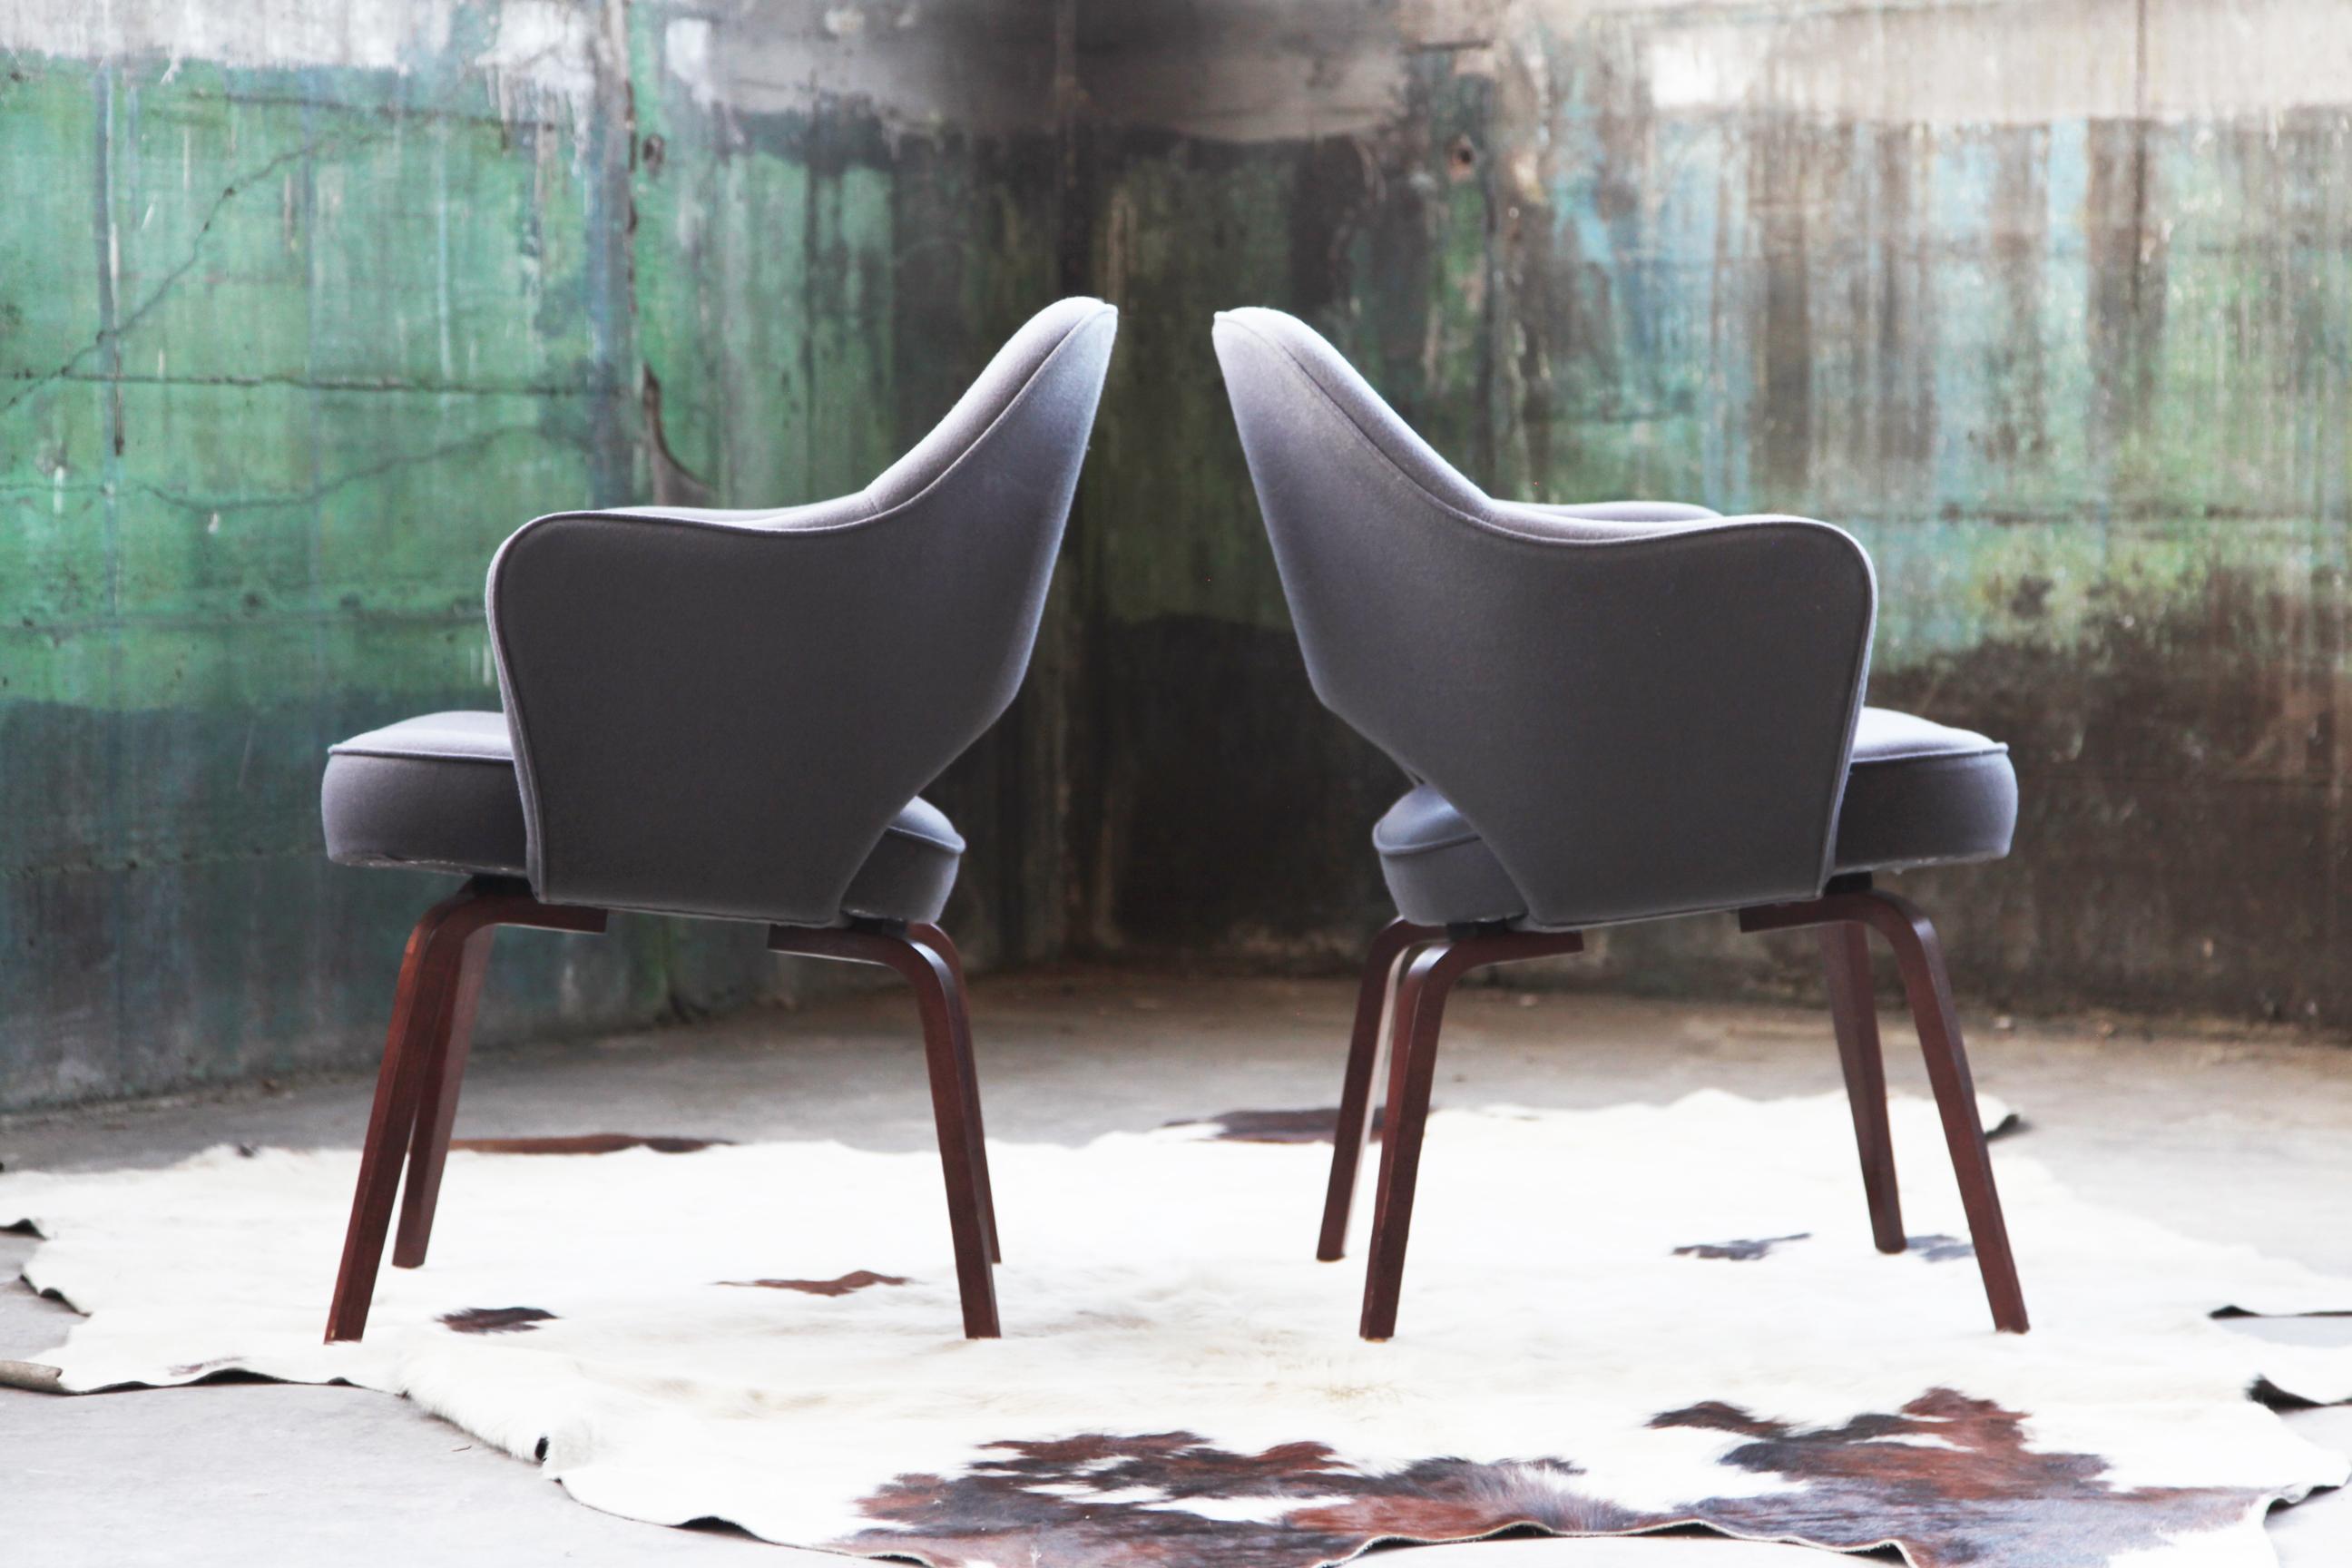 Il reste une chaise, vendue individuellement ici. Excellent état général. 

Fauteuil de direction Saarinen avec une base en bois, revêtu d'un splendide textile gris en laine mélangée. Cette chaise est entièrement d'origine et dans un état